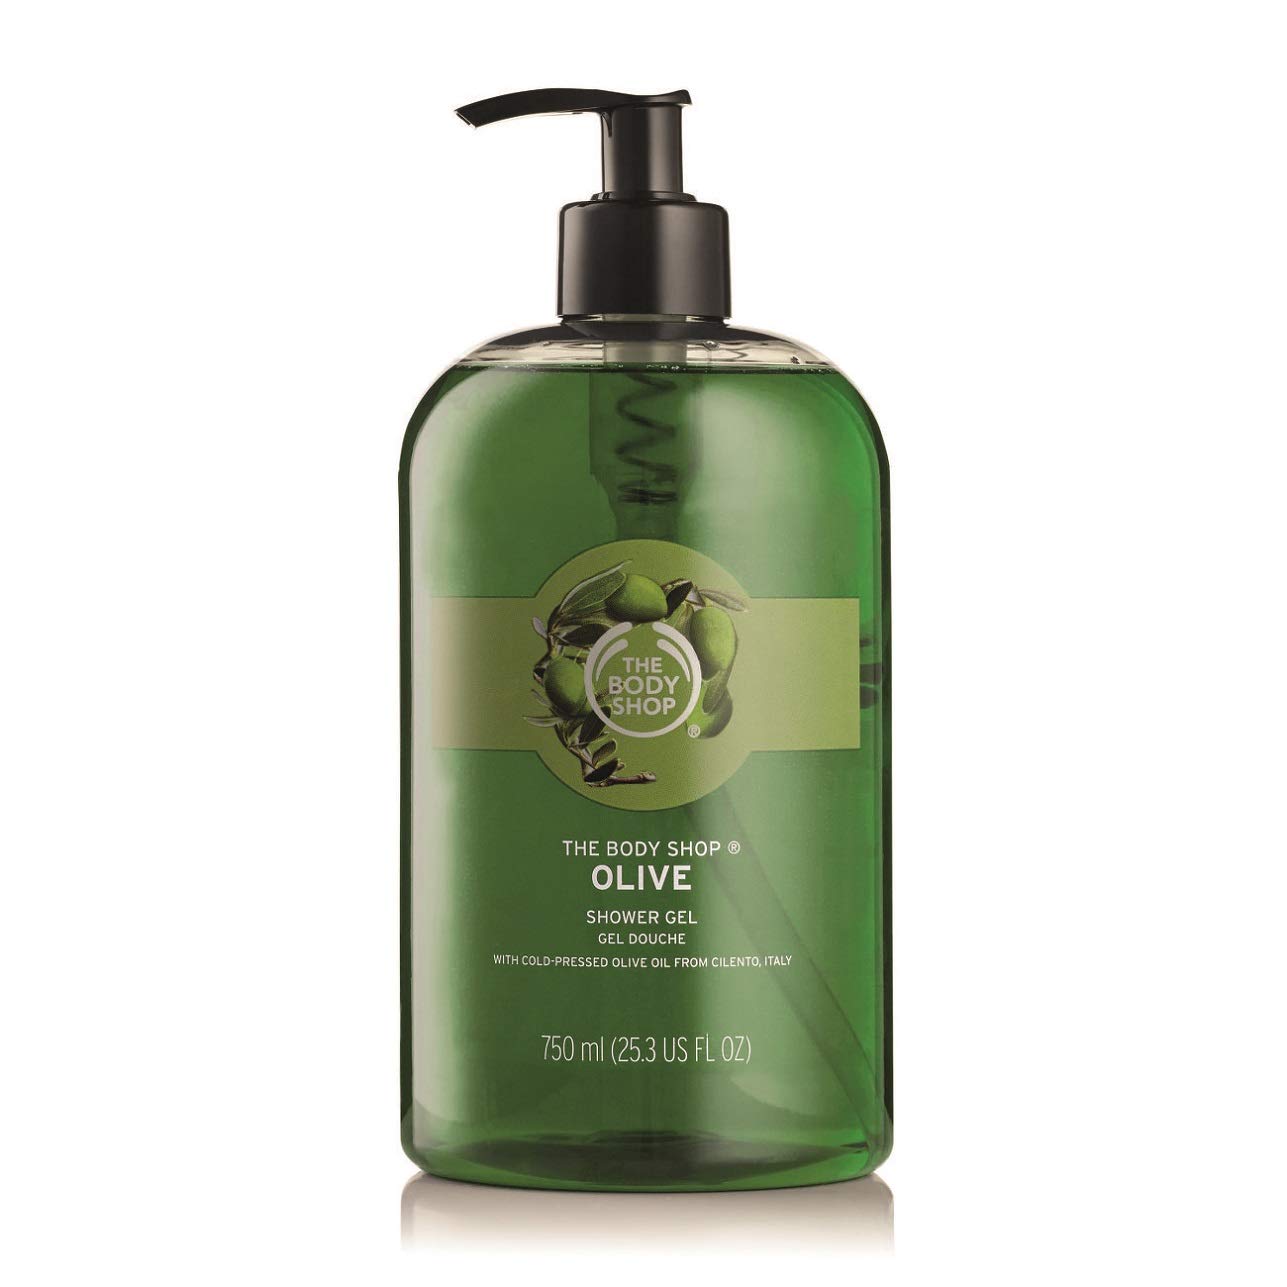 The Body Shop Olive Shower Gel Jumbo, 25.3 Fluid Ounces